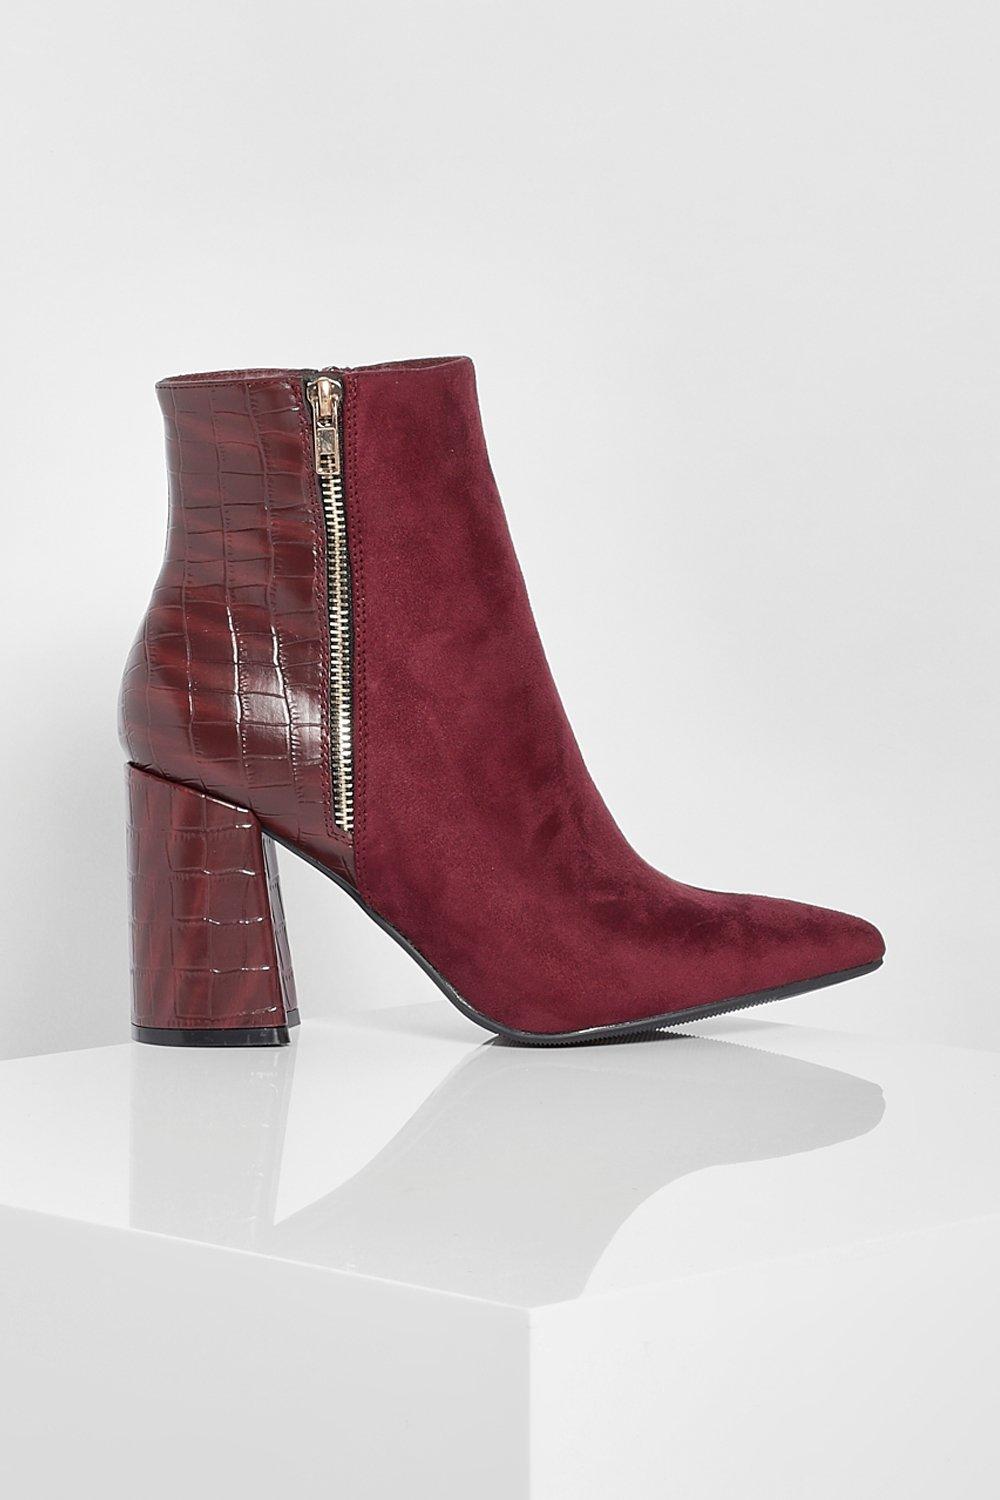 Boohoo Zip Side Block Heel Shoe Boots in Burgundy Womens Shoes Boots Heel and high heel boots Red 